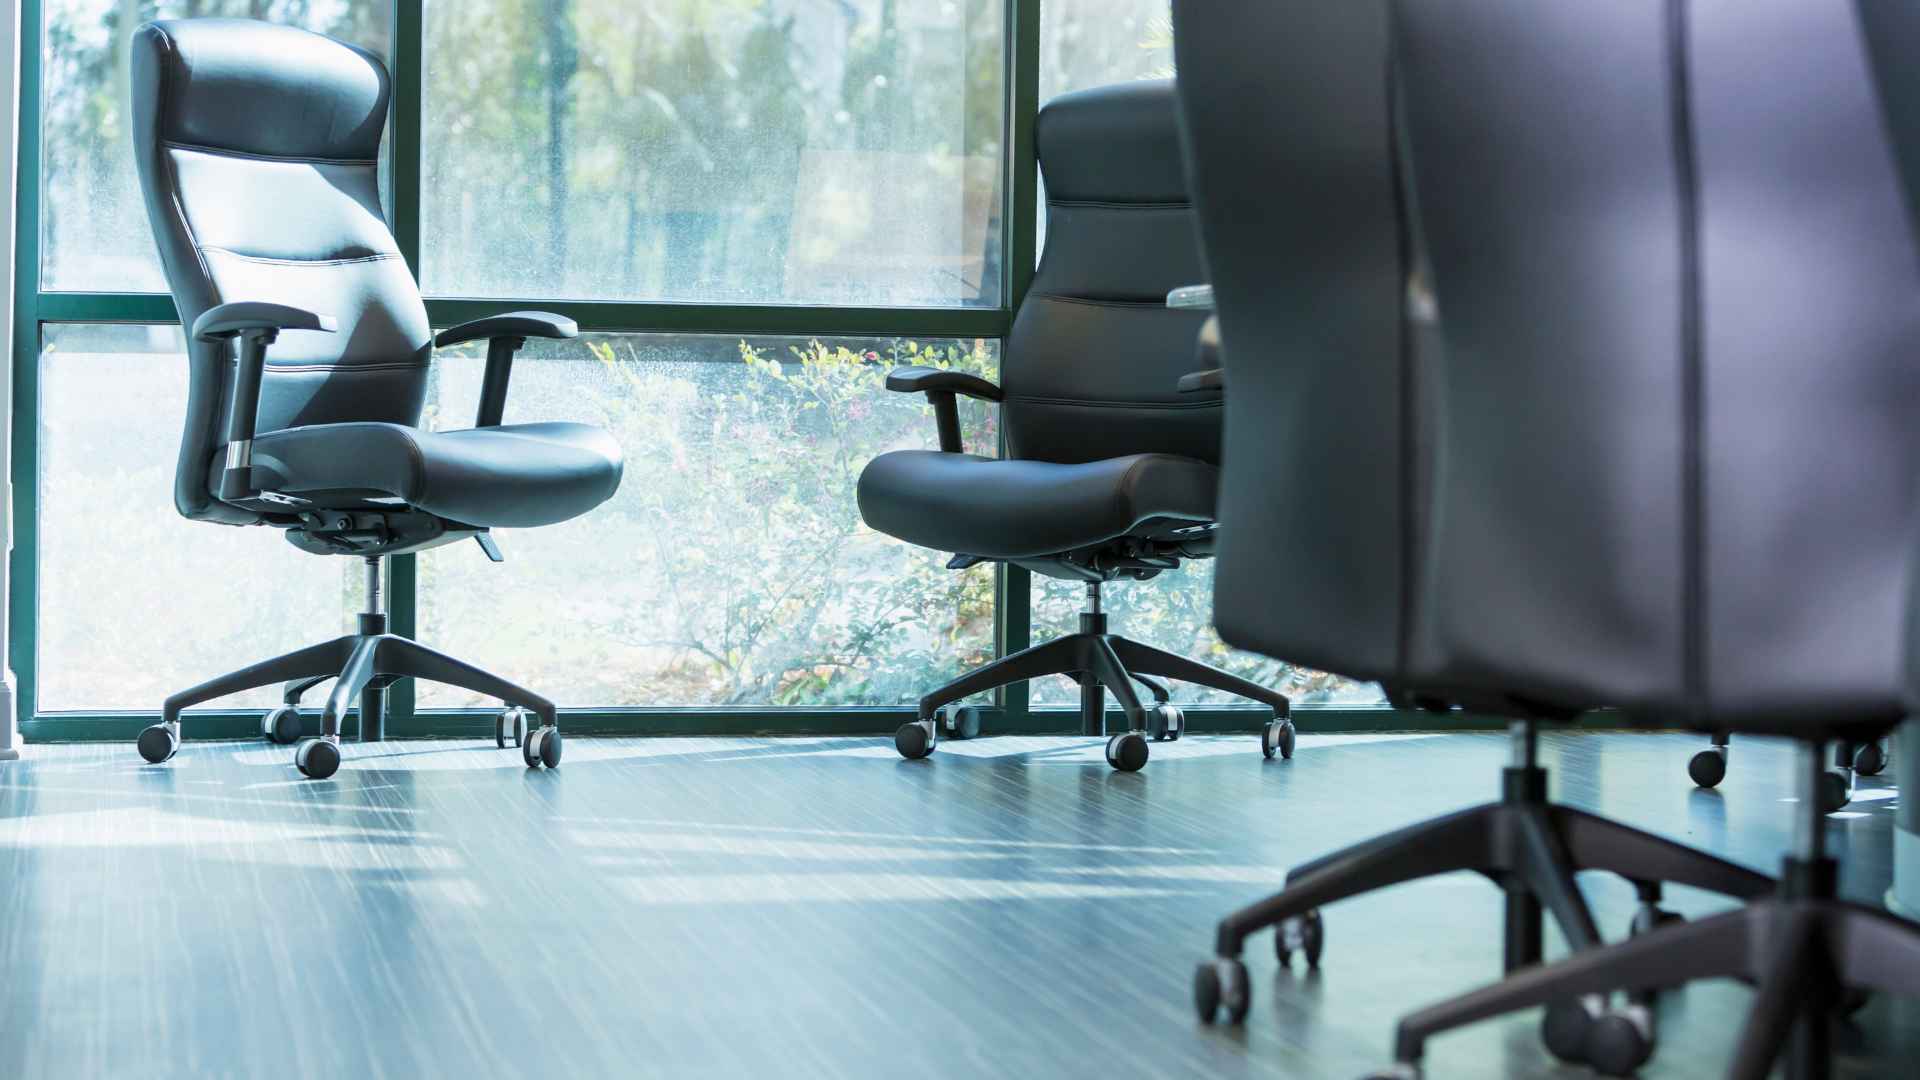 החשיבות של כסא משרדי טוב: טיפים למציאת הכיסא הנכון